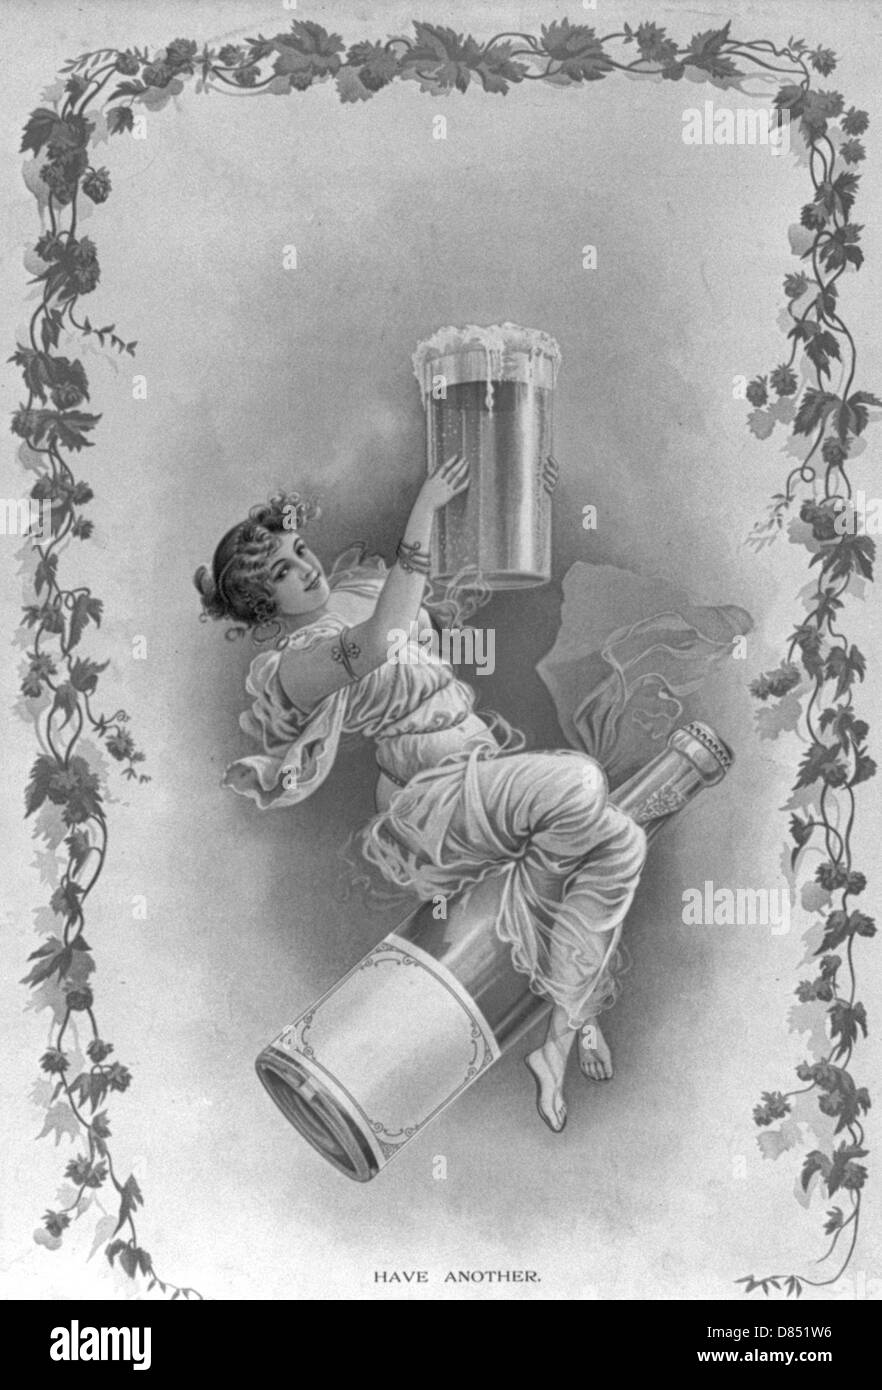 Avoir un autre - montre une femme assise sur une bouteille, tenant un verre rempli d'une boisson alcoolisée avec bras levés comme si dans un toast. Vintage poster, vers 1900 Banque D'Images